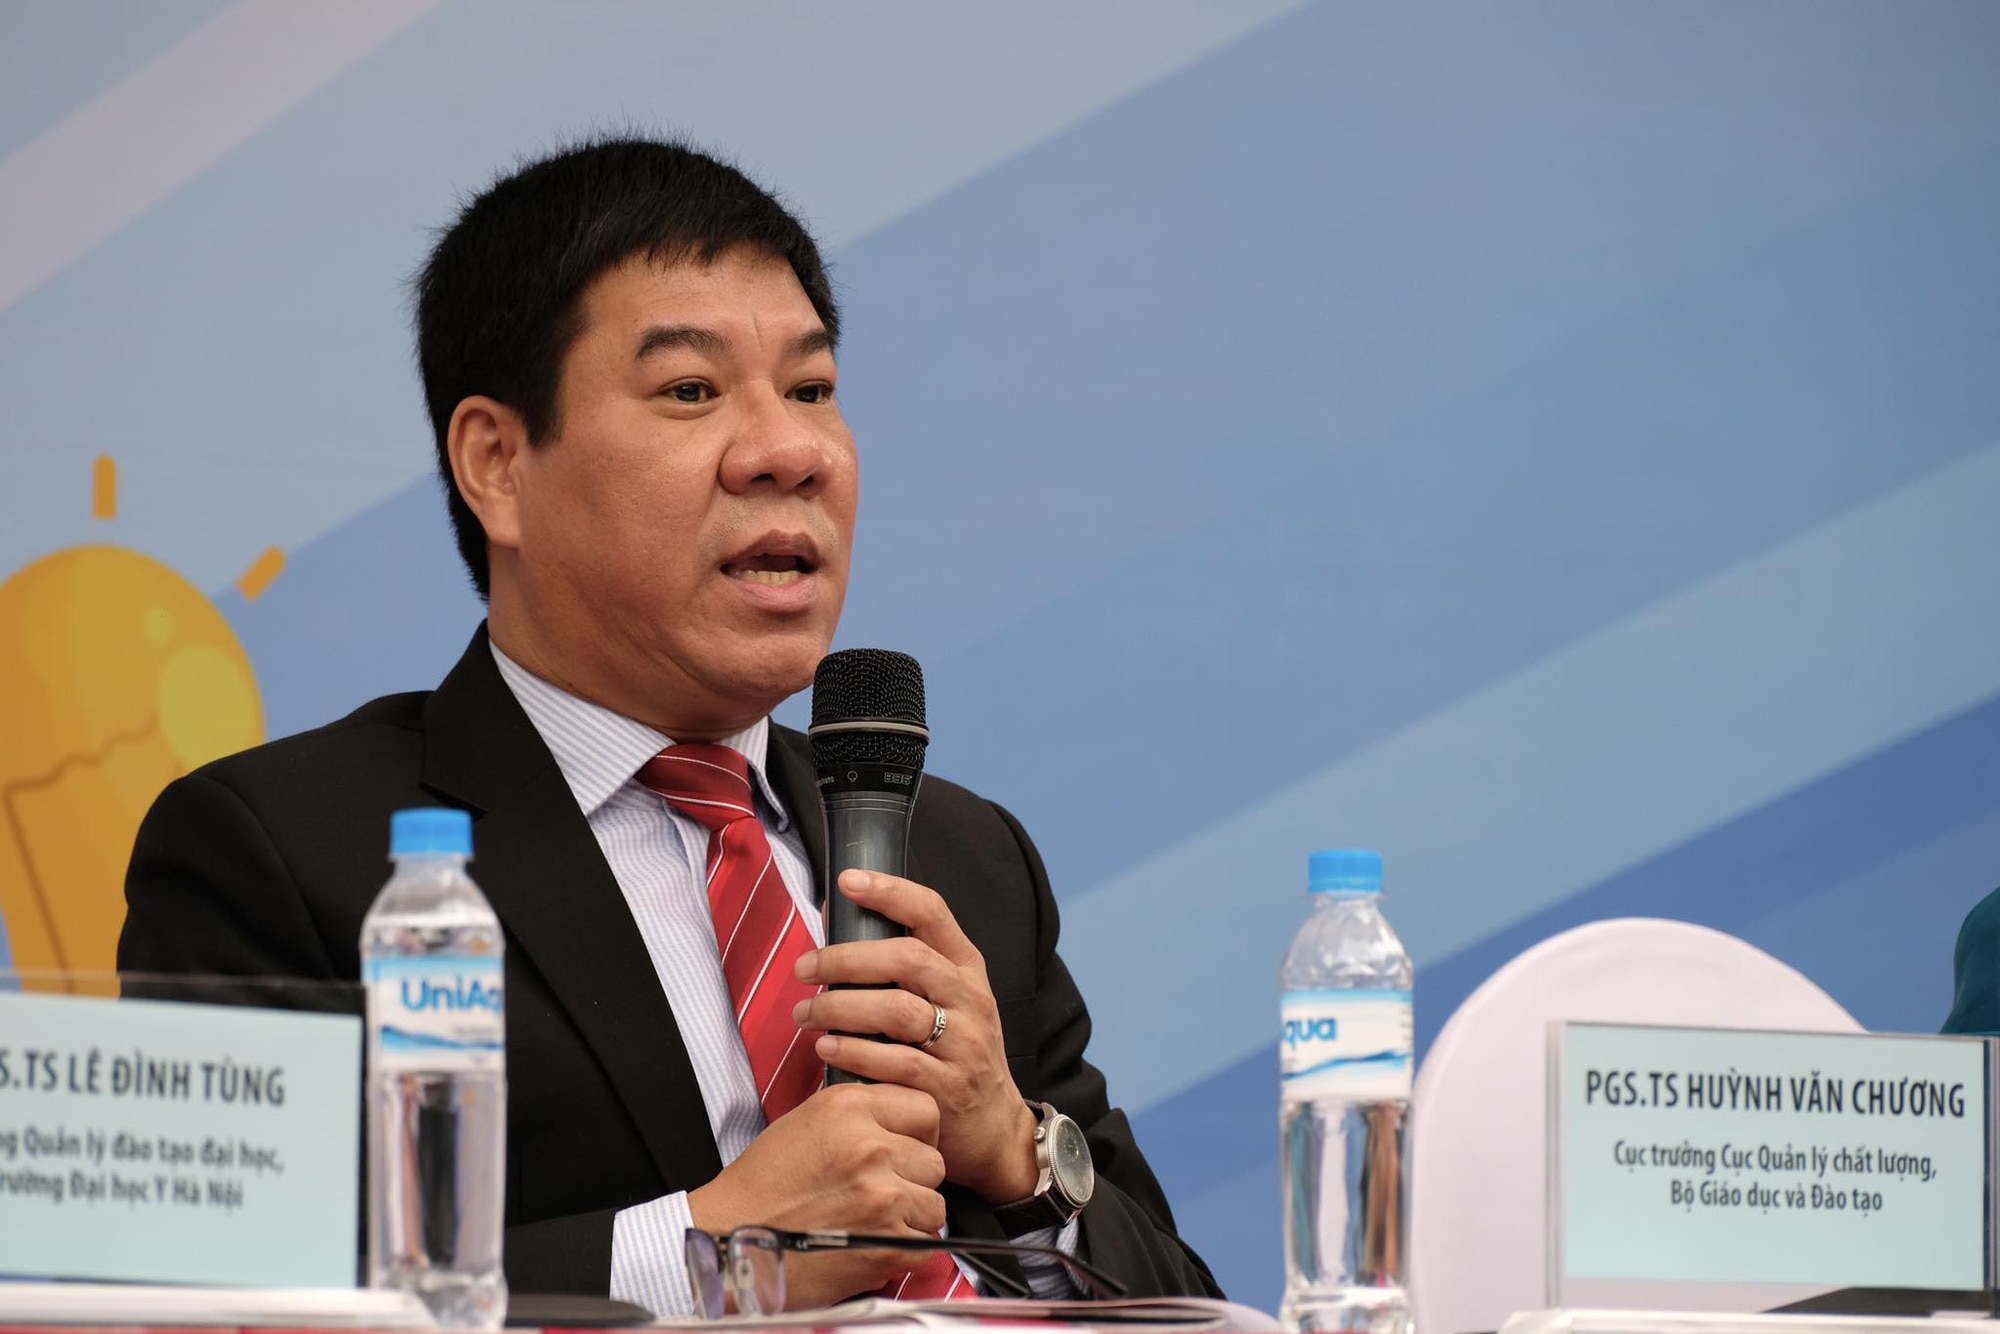 Ông Huỳnh Văn Chương (cục trưởng Cục Quản lý chất lượng, Bộ Giáo dục và Đào tạo)